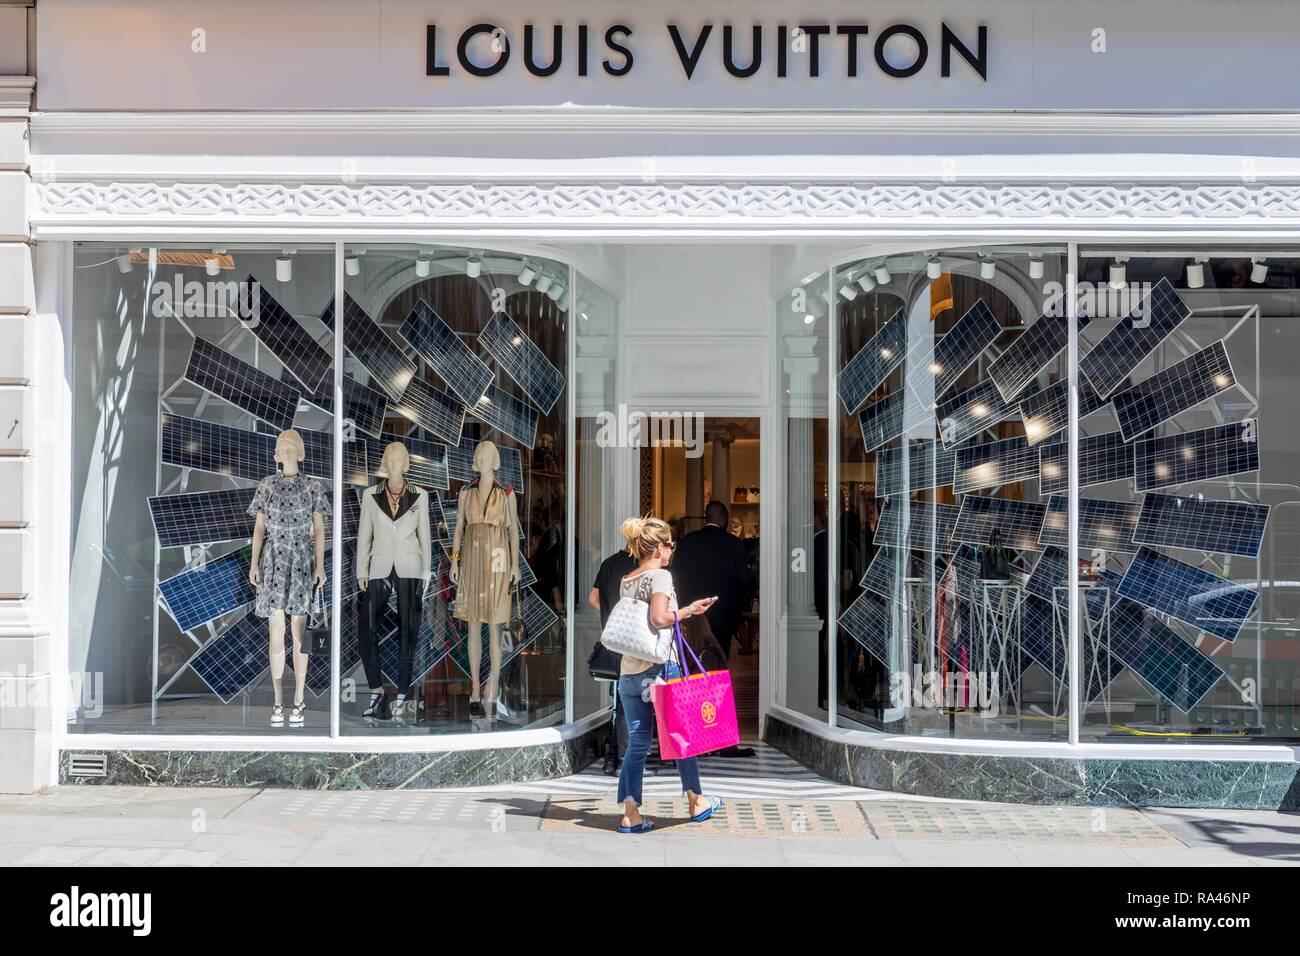 I passanti di fronte alla vetrina del negozio di moda Louis Vuitton, London, Regno Unito Foto Stock